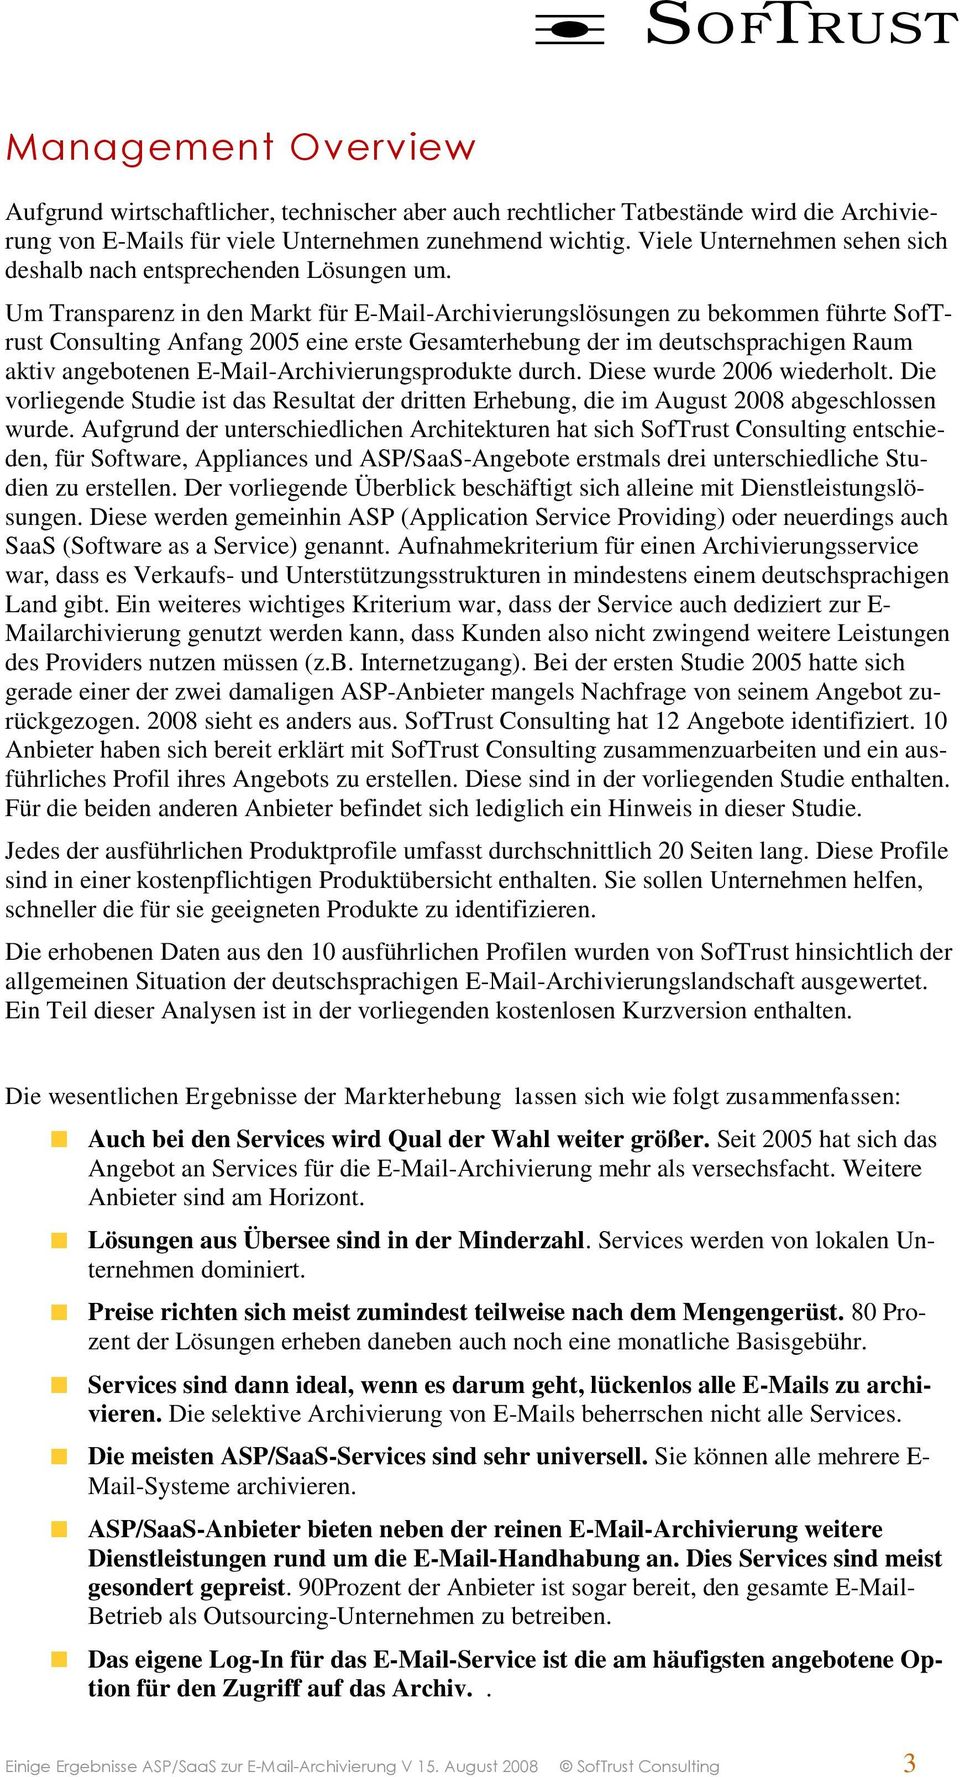 Um Transparenz in den Markt für E-Mail-Archivierungslösungen zu bekommen führte SofTrust Consulting Anfang 2005 eine erste Gesamterhebung der im deutschsprachigen Raum aktiv angebotenen